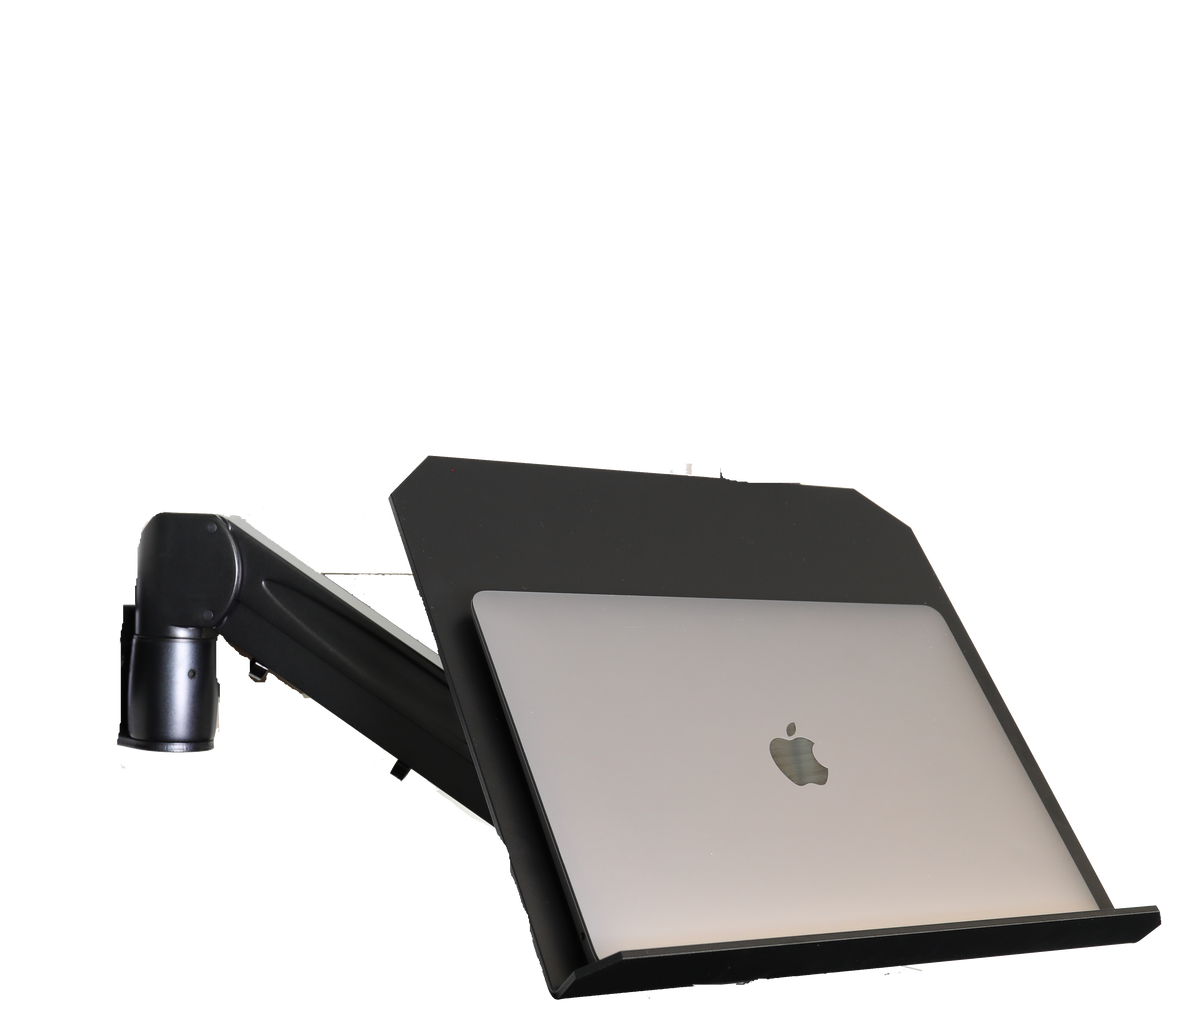 Laptop stand til Gaming bar G:ARM LAPTOP BAR